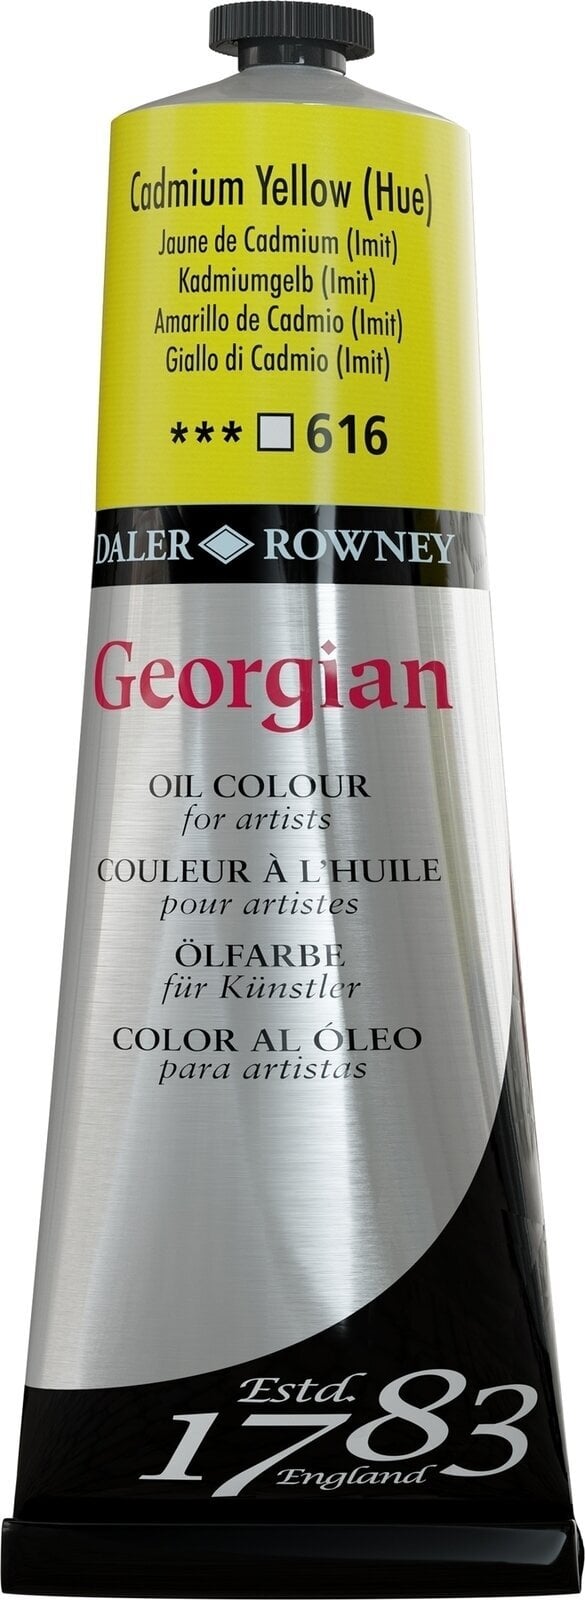 Tempera ad olio Daler Rowney Georgian Pittura a olio Cadmium Yellow Hue 225 ml 1 pz